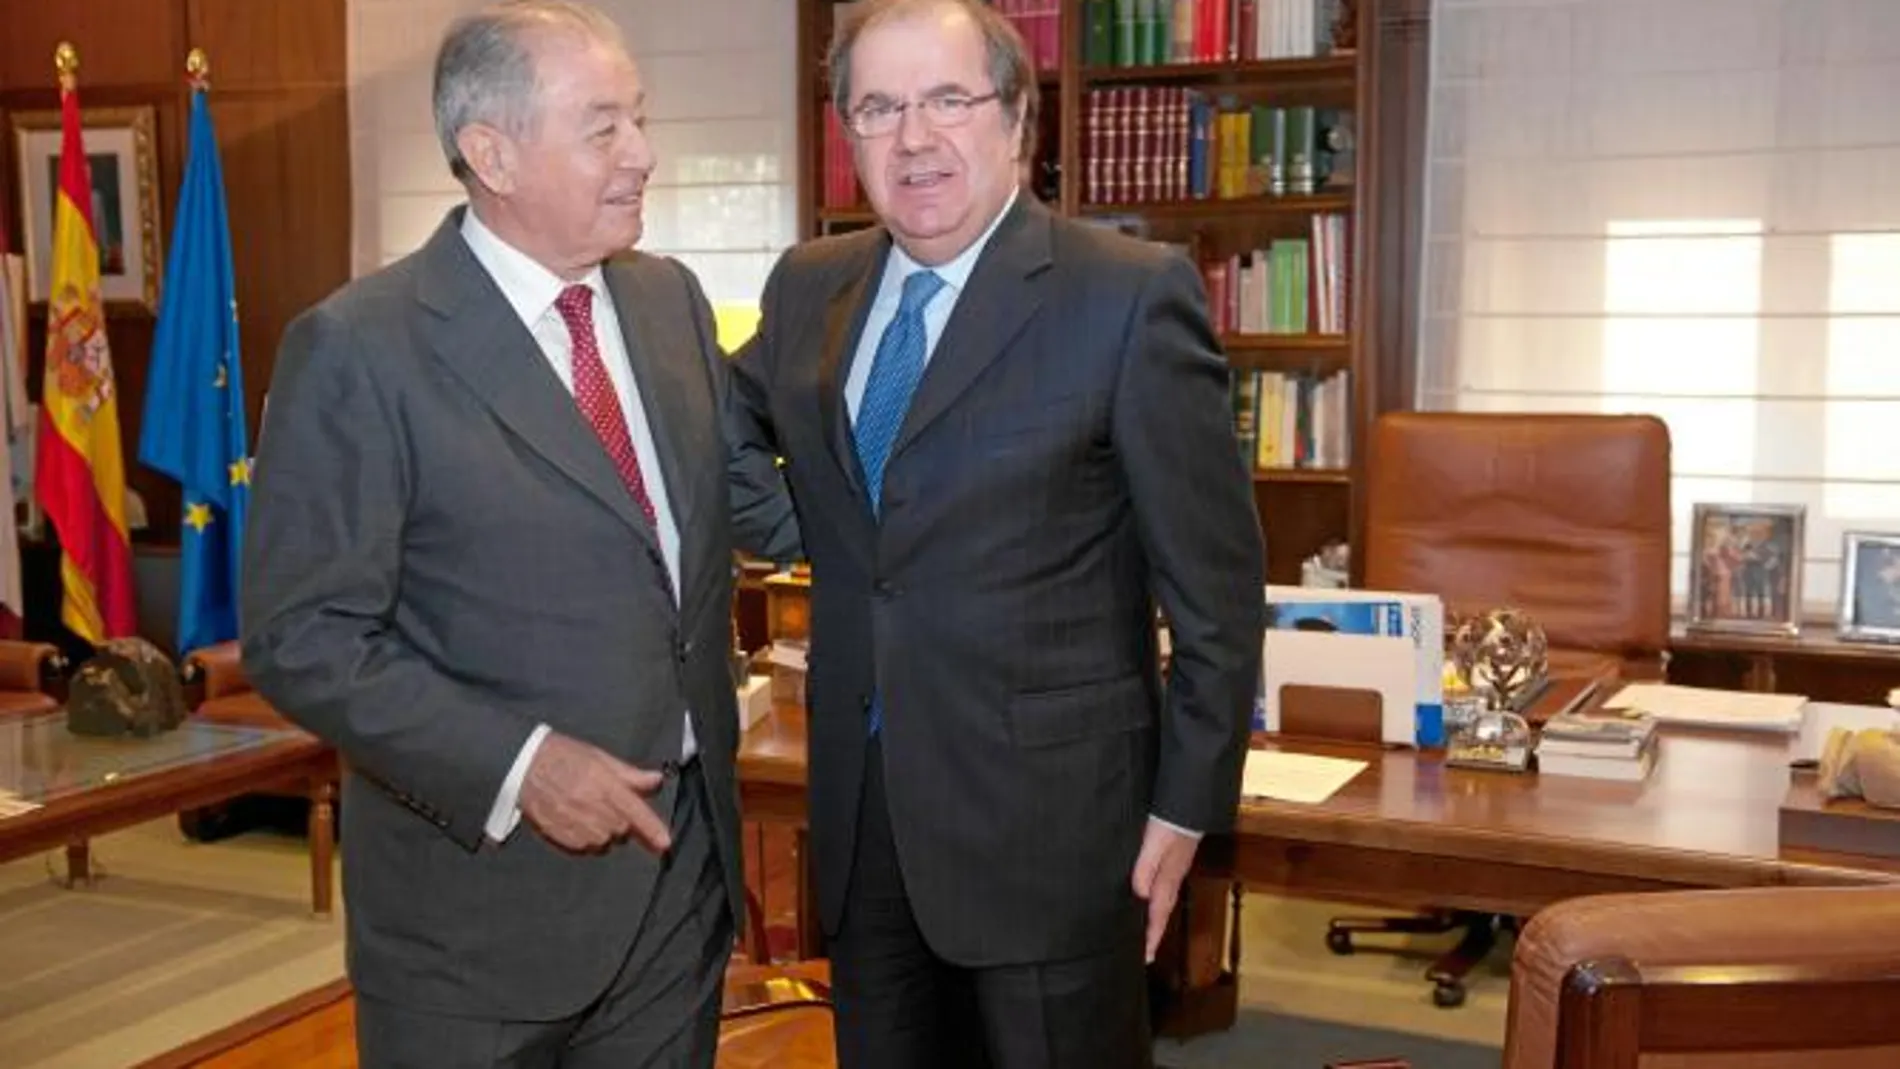 El presidente de Castilla y León, Juan Vicente Herrera, recibe al presidente de Gas Natural Fenosa, Salvador Gabarró